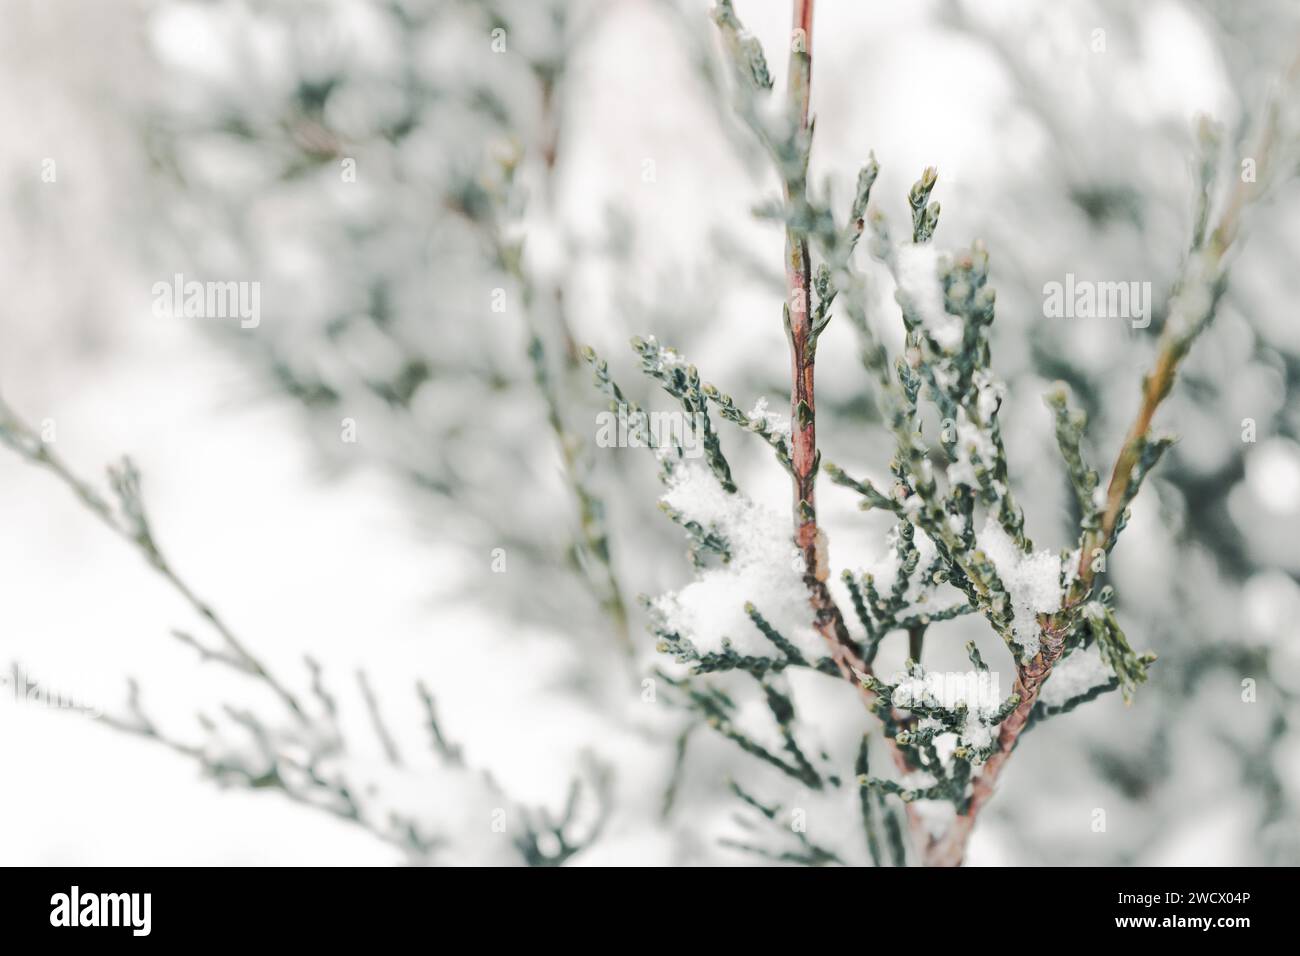 Branches de conifères enneigées. Juniper Bush sous la neige, gros plan. Concept par temps froid. Hiver dans la nature. Plante Evergreen sous la neige. Banque D'Images